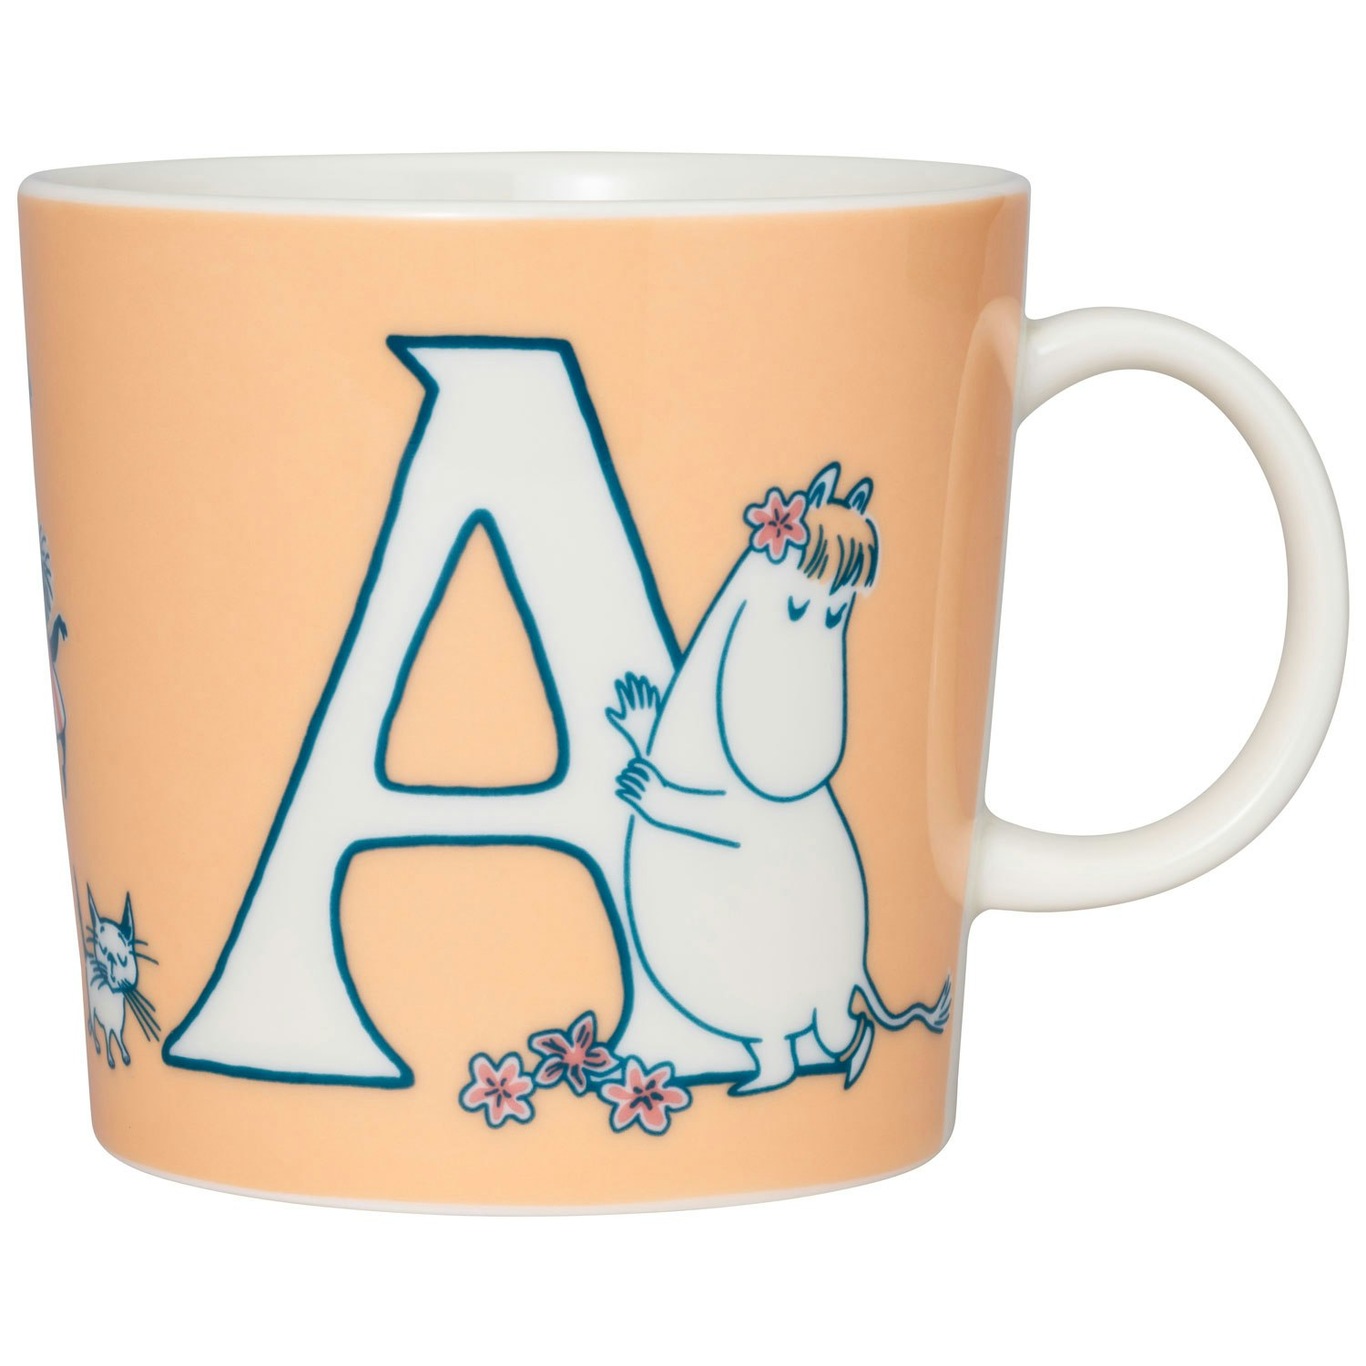 Moomin ABC Mug 40 cl, A